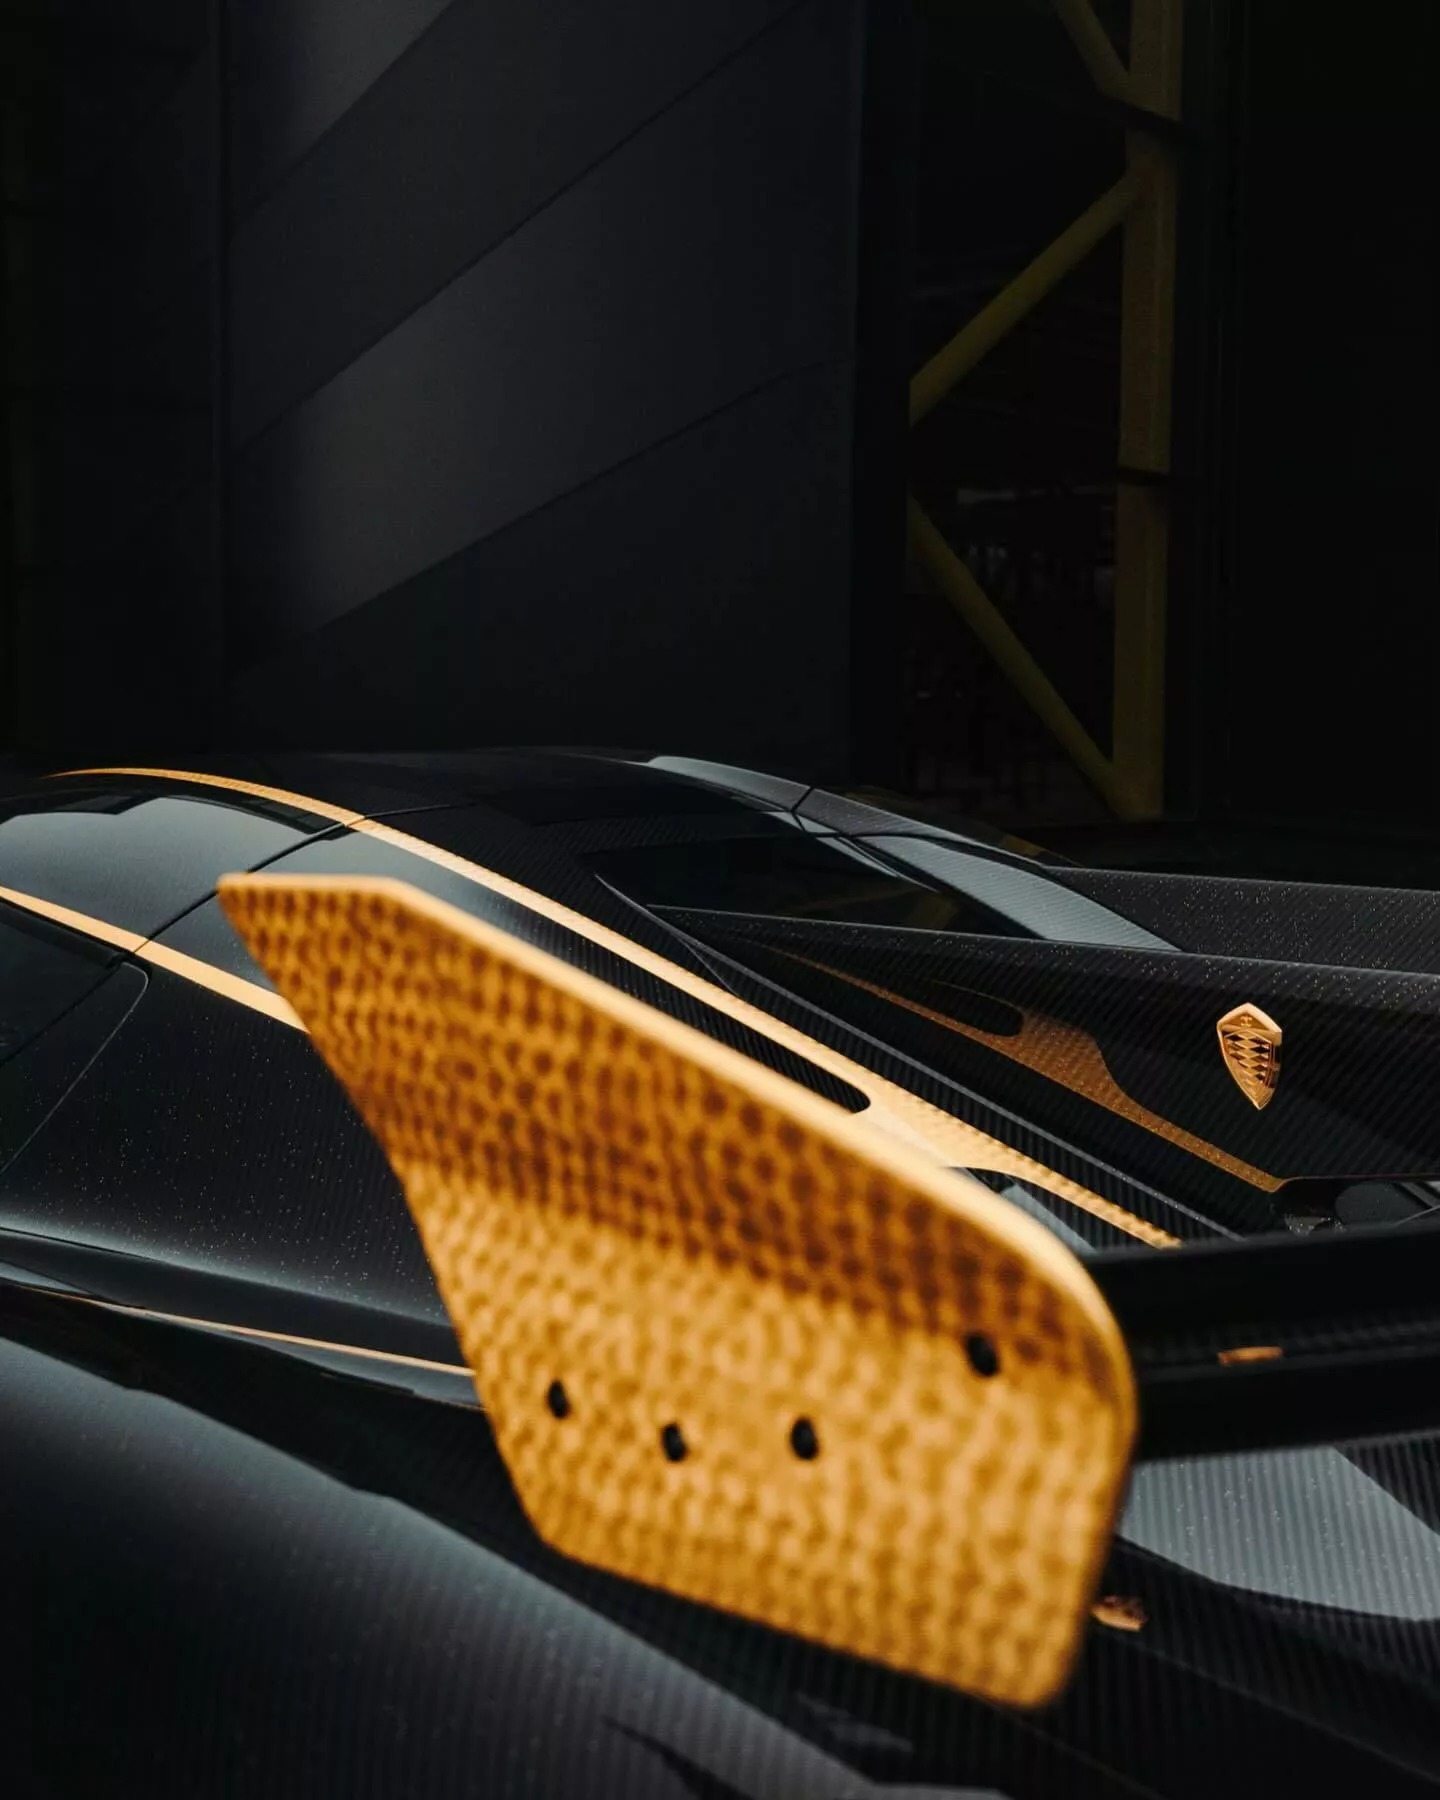 Đại gia bất động sản chơi siêu xe Koenigsegg khác người: Rắc bột vàng lên khắp vỏ carbon, mạ vàng 24k nhiều chi tiết ngoại thất- Ảnh 7.